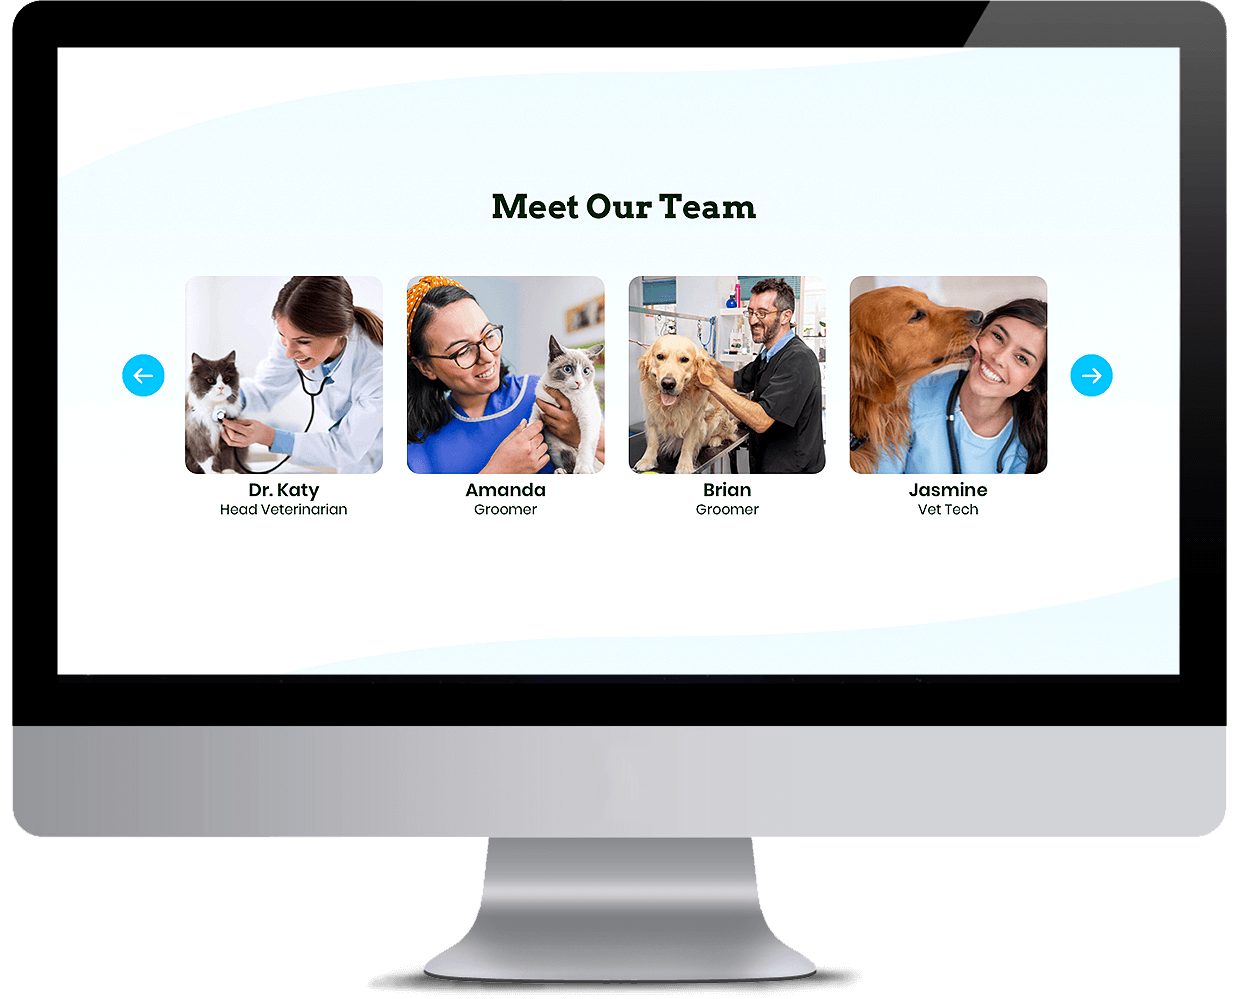 Pet services management sytem Team showcase interface desktop view